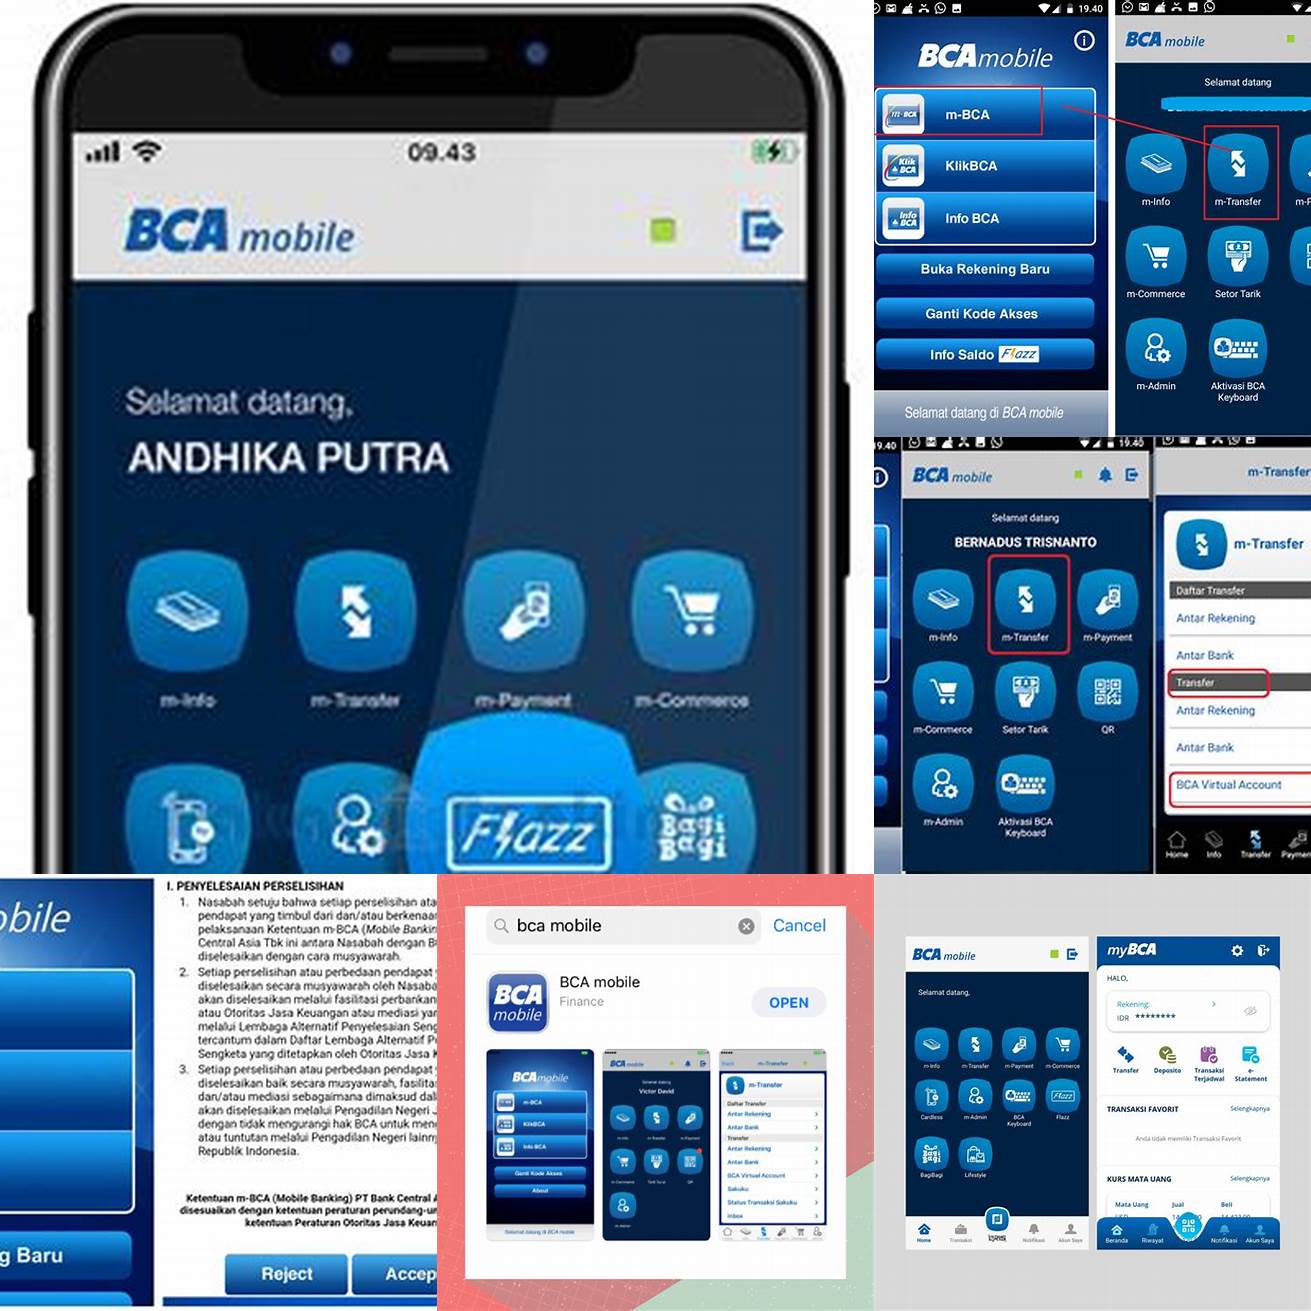 Kedua pilih menu Flazz pada halaman utama aplikasi BCA mobile